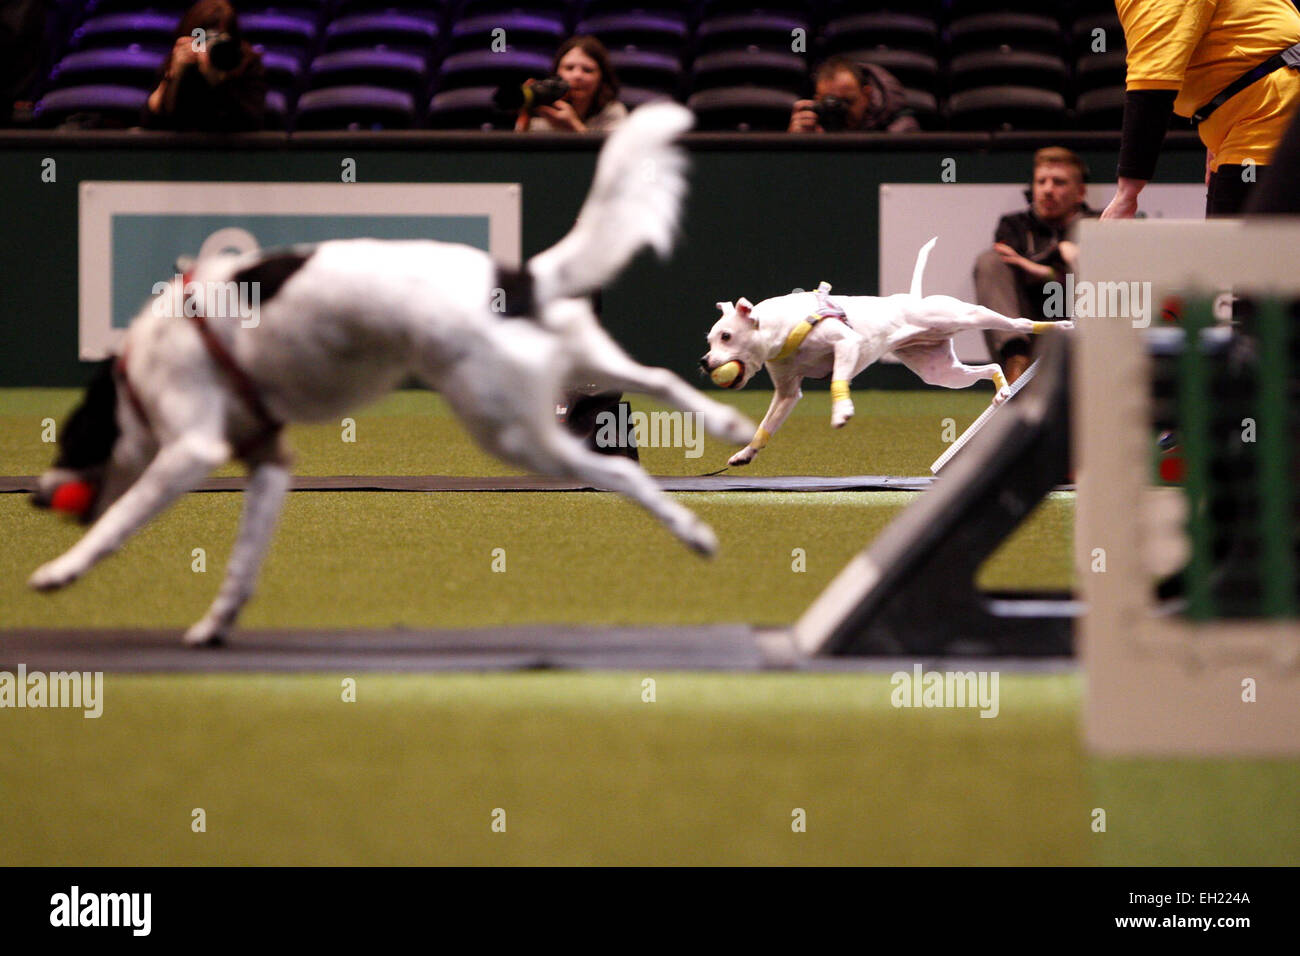 Birmingham, Regno Unito. 5 Marzo, 2015. Cani godendo di prendere parte al concorso Flyball al Crufts che è iniziato oggi a Birmingham, Regno Unito. Credito: Jon Freeman/Alamy Live News Foto Stock